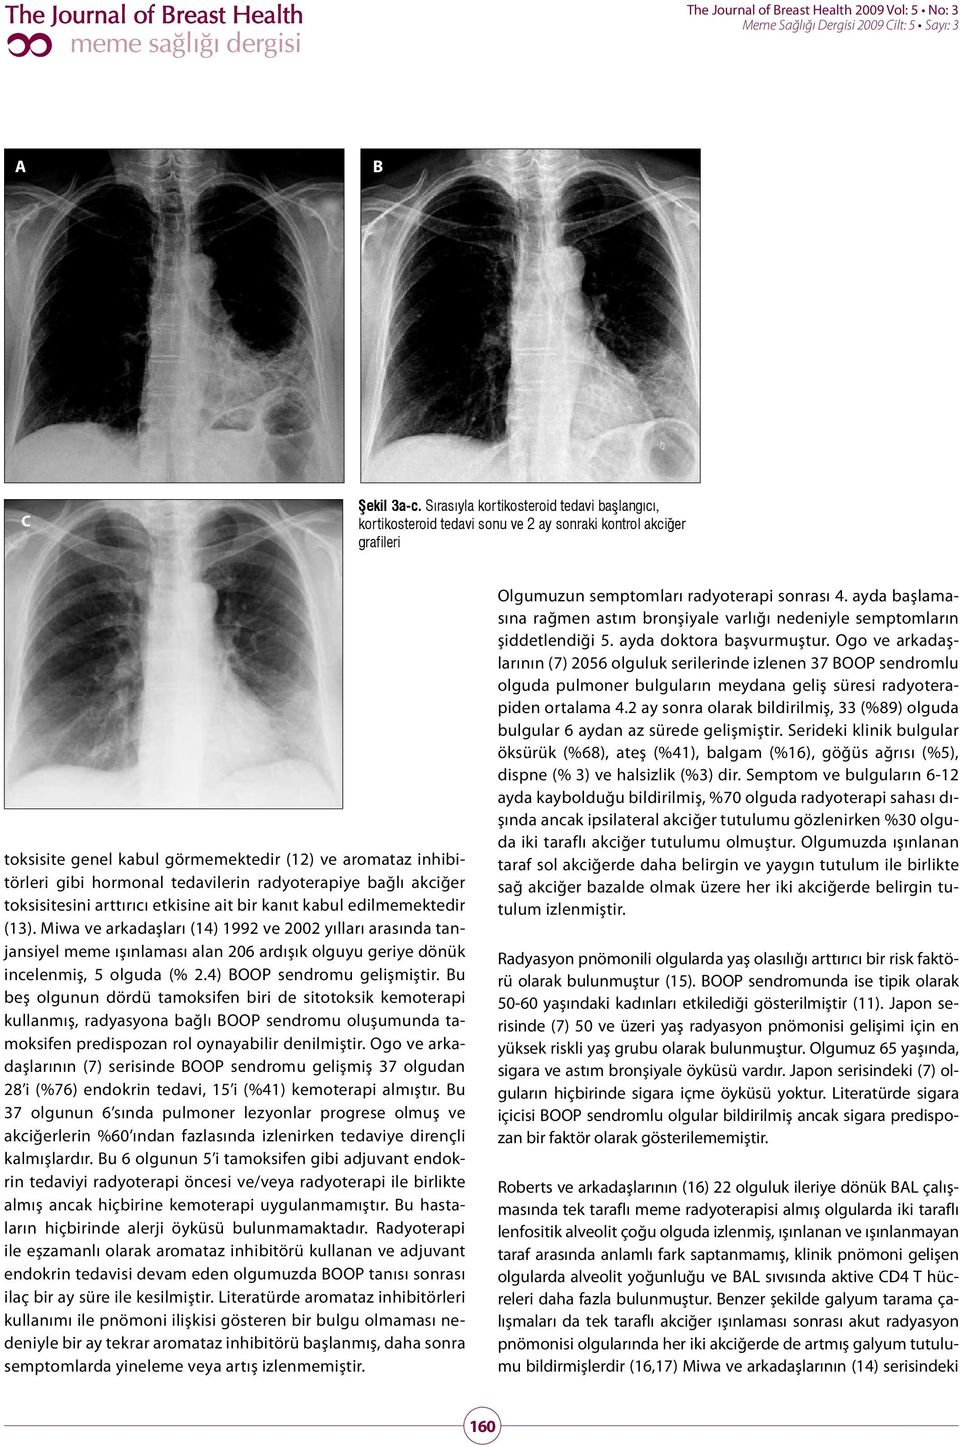 tedavilerin radyoterapiye bağlı akciğer toksisitesini arttırıcı etkisine ait bir kanıt kabul edilmemektedir (13).